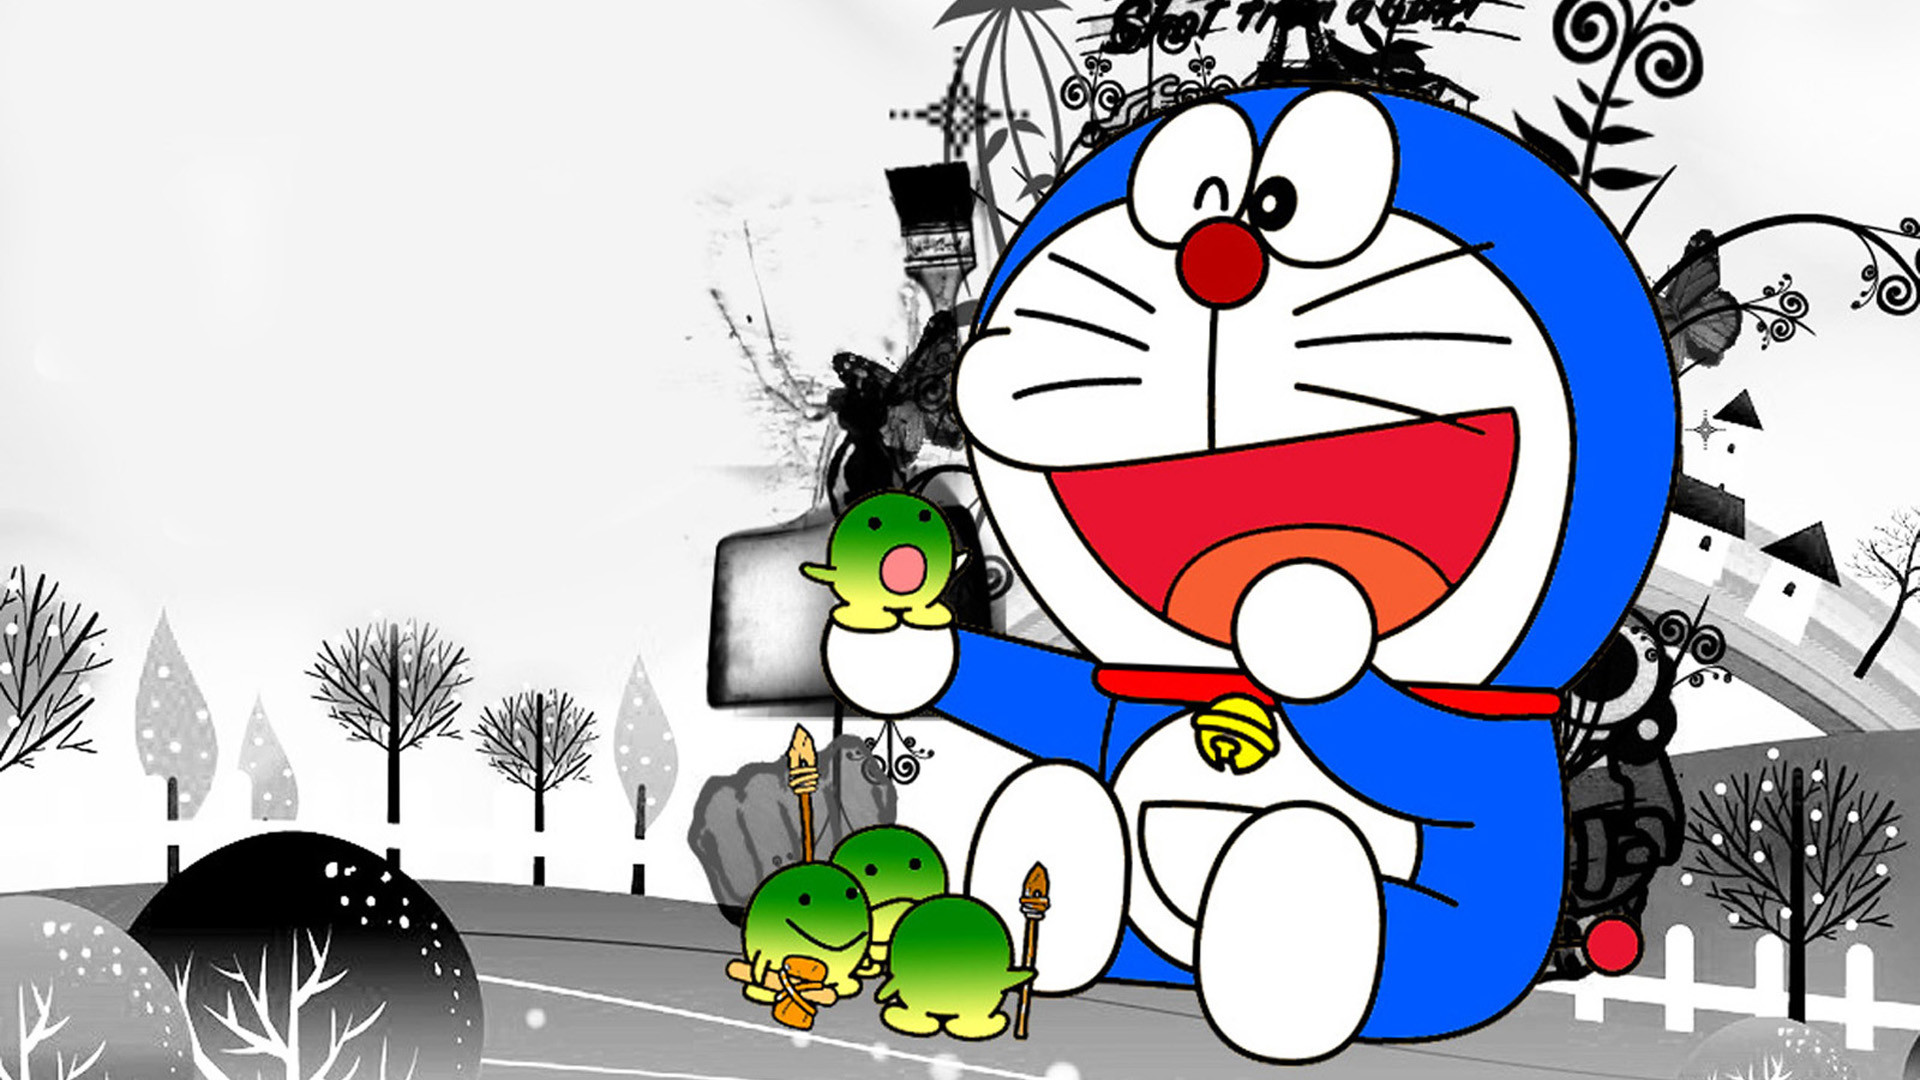 Bạn yêu thích những khoảnh khắc vui vẻ cùng bạn bè trong bộ truyện Doraemon? Hãy xem ngay hình nền Doraemon và bạn bè để cùng nhau tái hiện những kỷ niệm đáng nhớ đó!